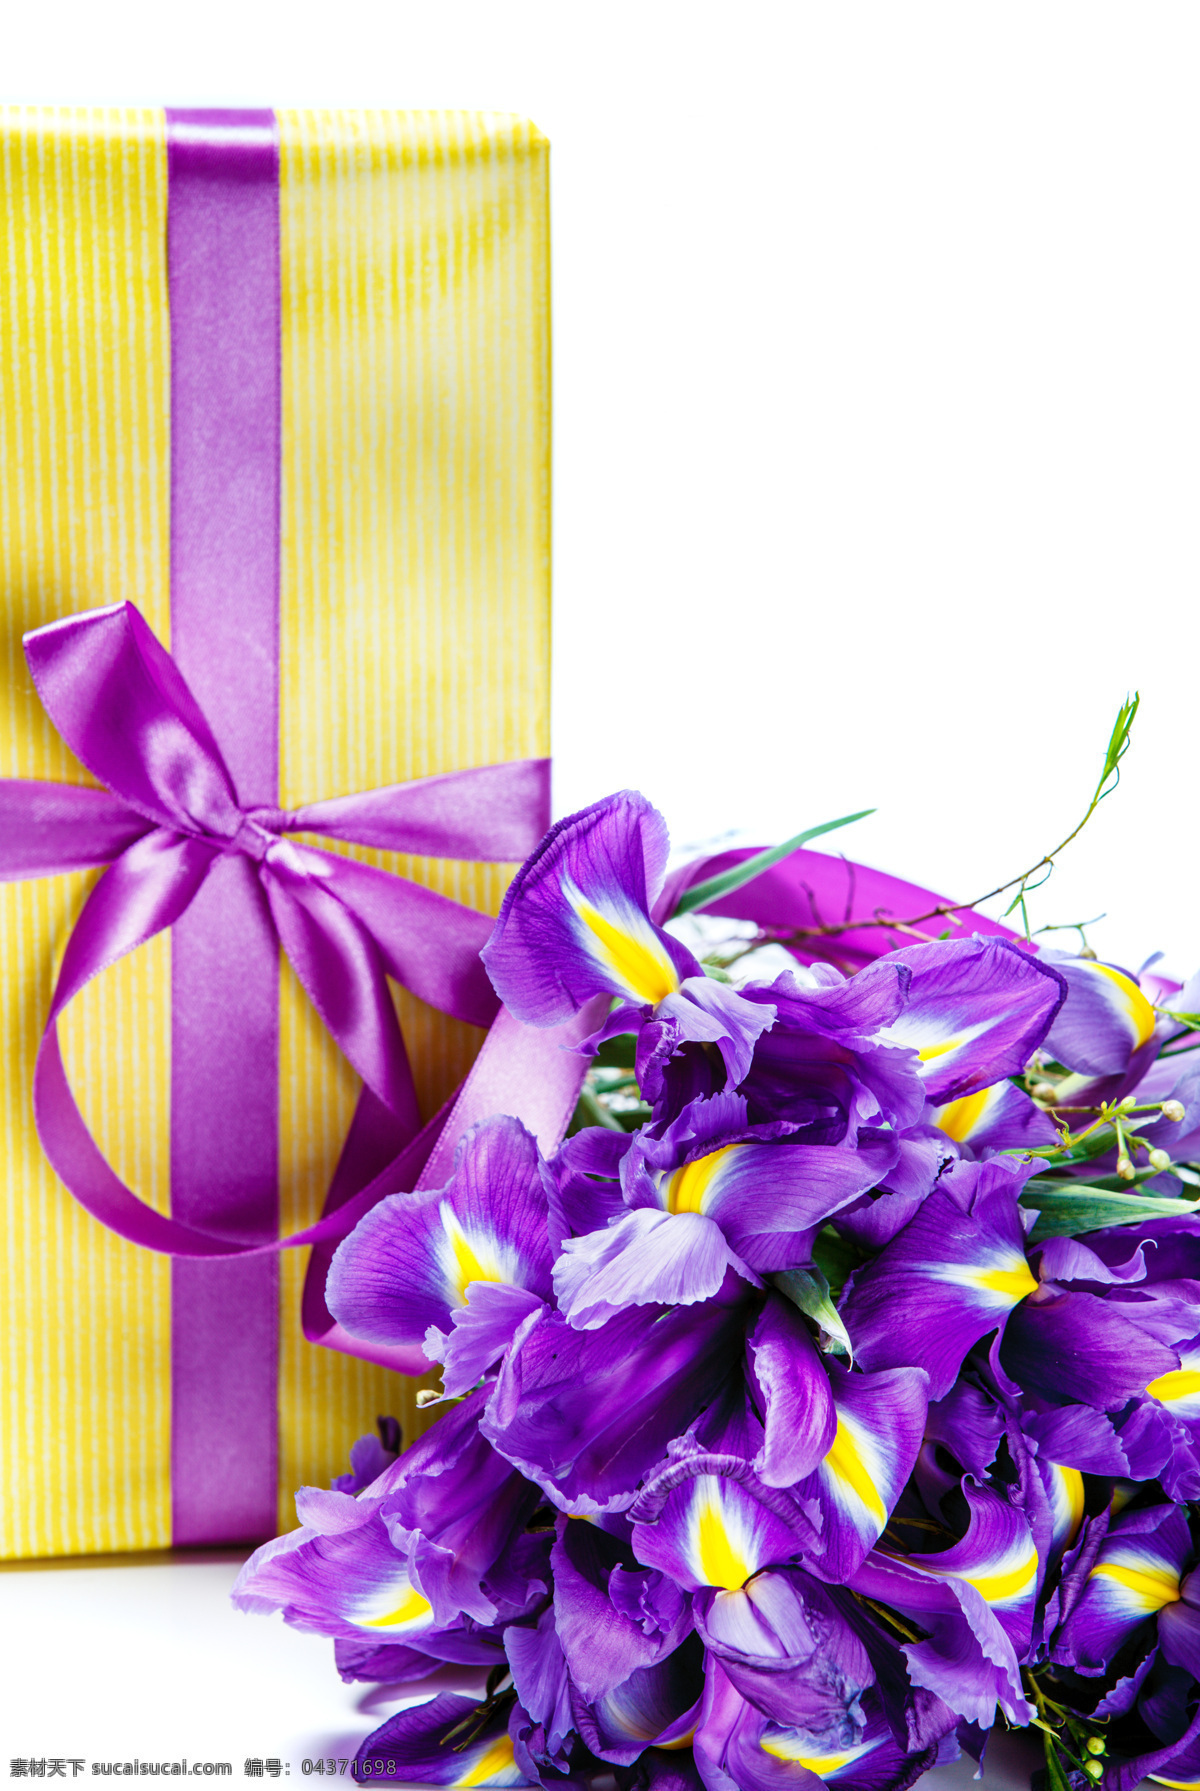 美丽 鲜花 礼包 紫色鲜花 礼物 丝带 美丽鲜花 花卉 花朵 花草树木 生物世界